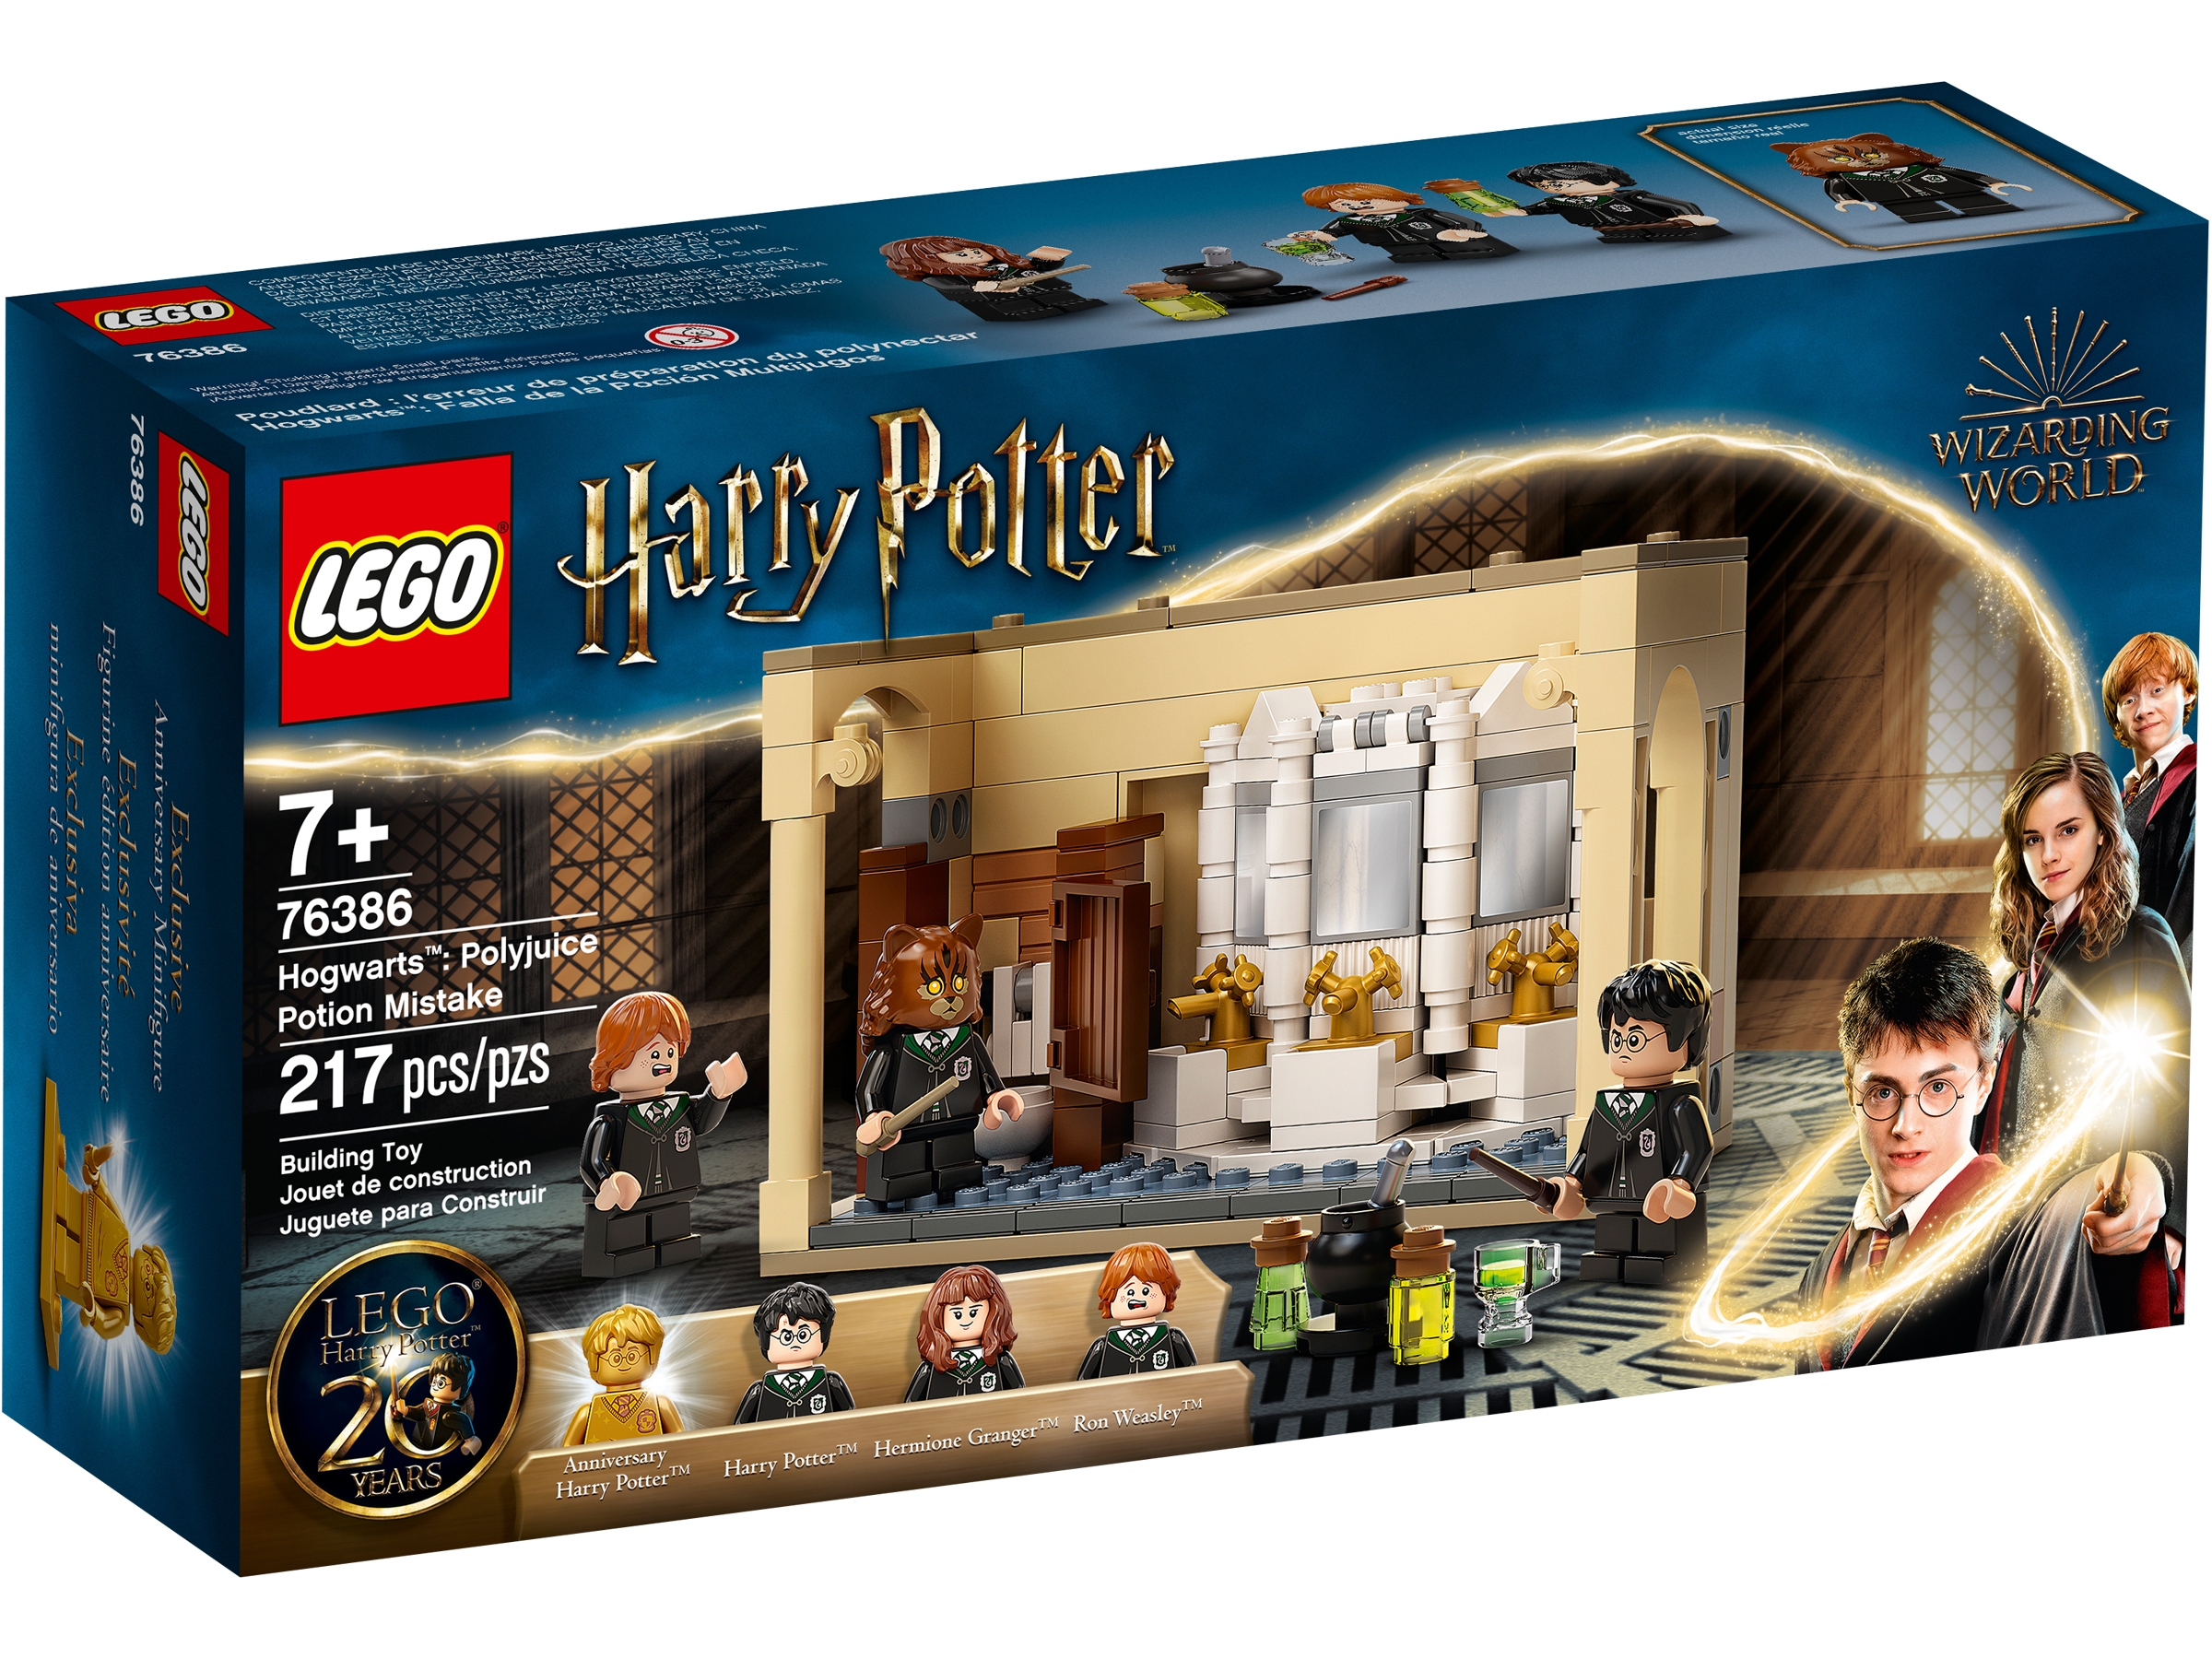 LEGO 76386 Hogwarts™ Polyjuice Potion Mistake